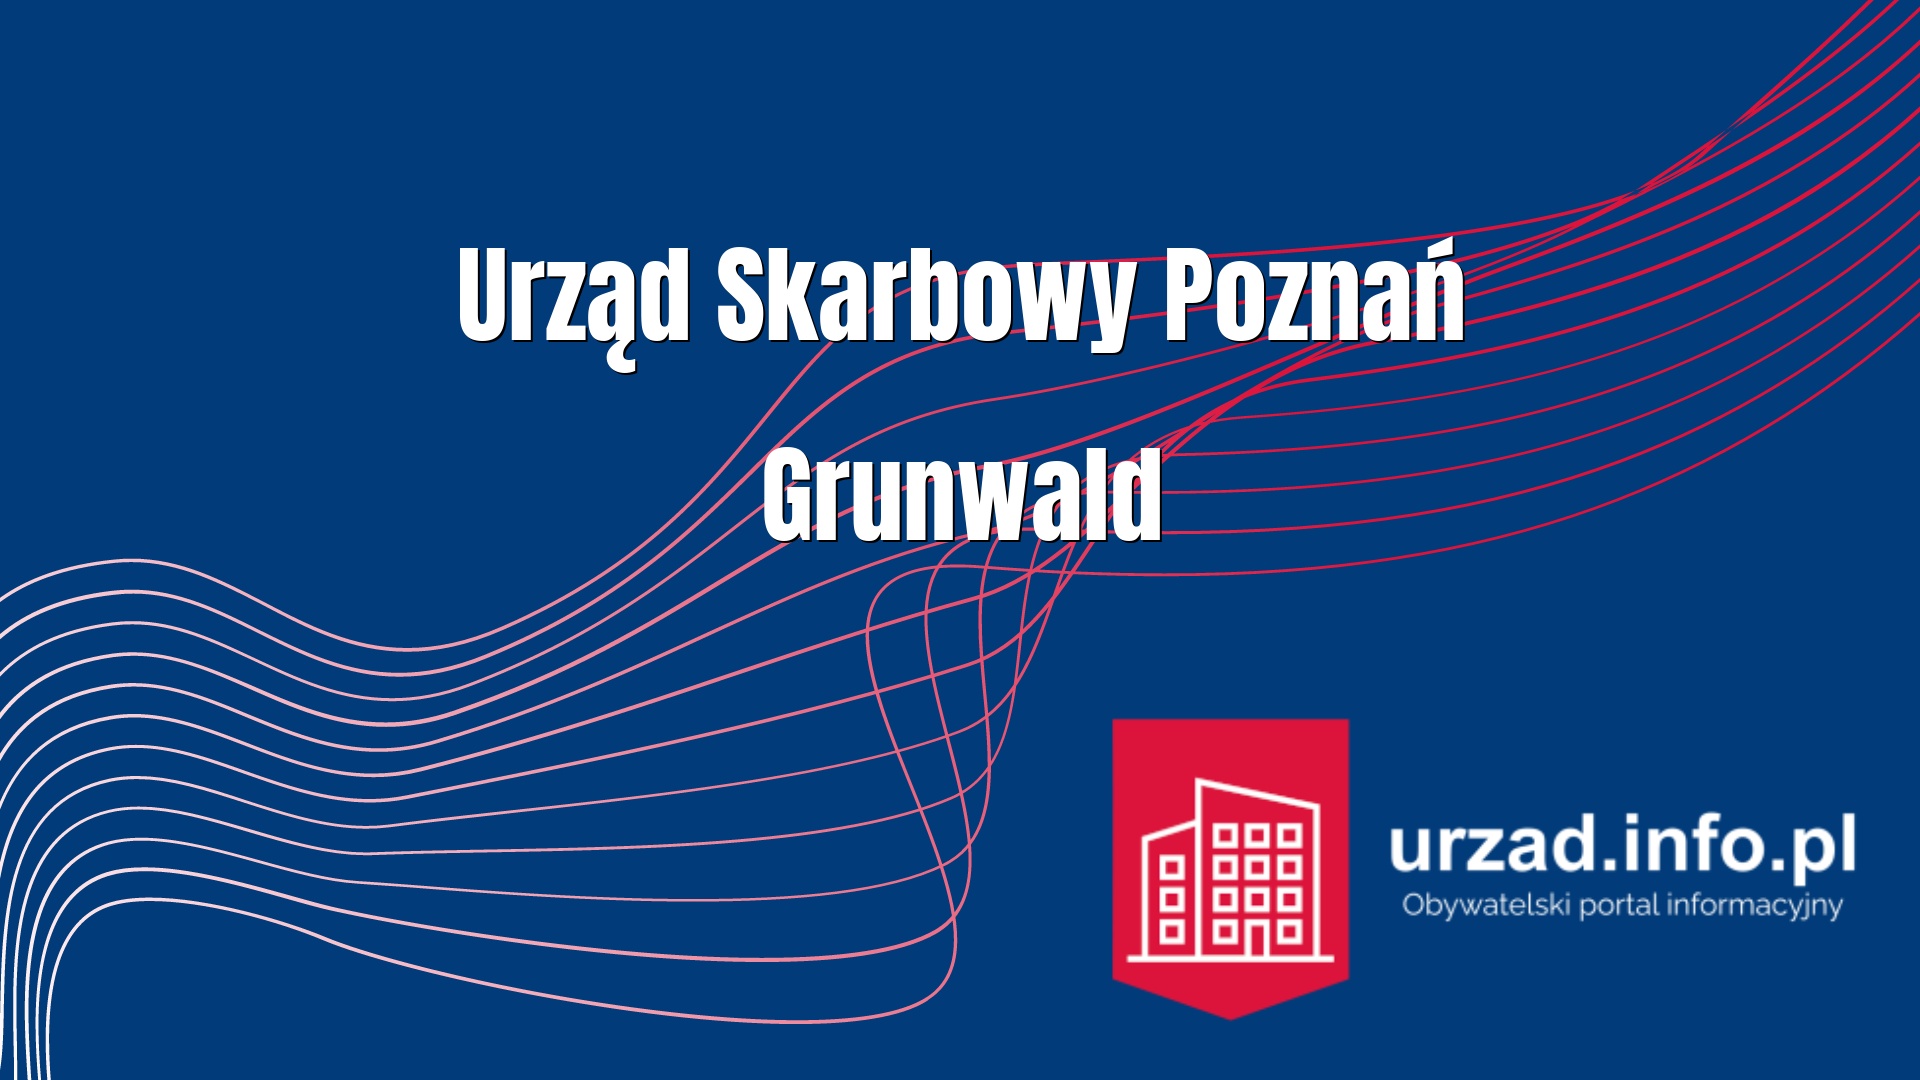 Urząd Skarbowy Poznań Grunwald